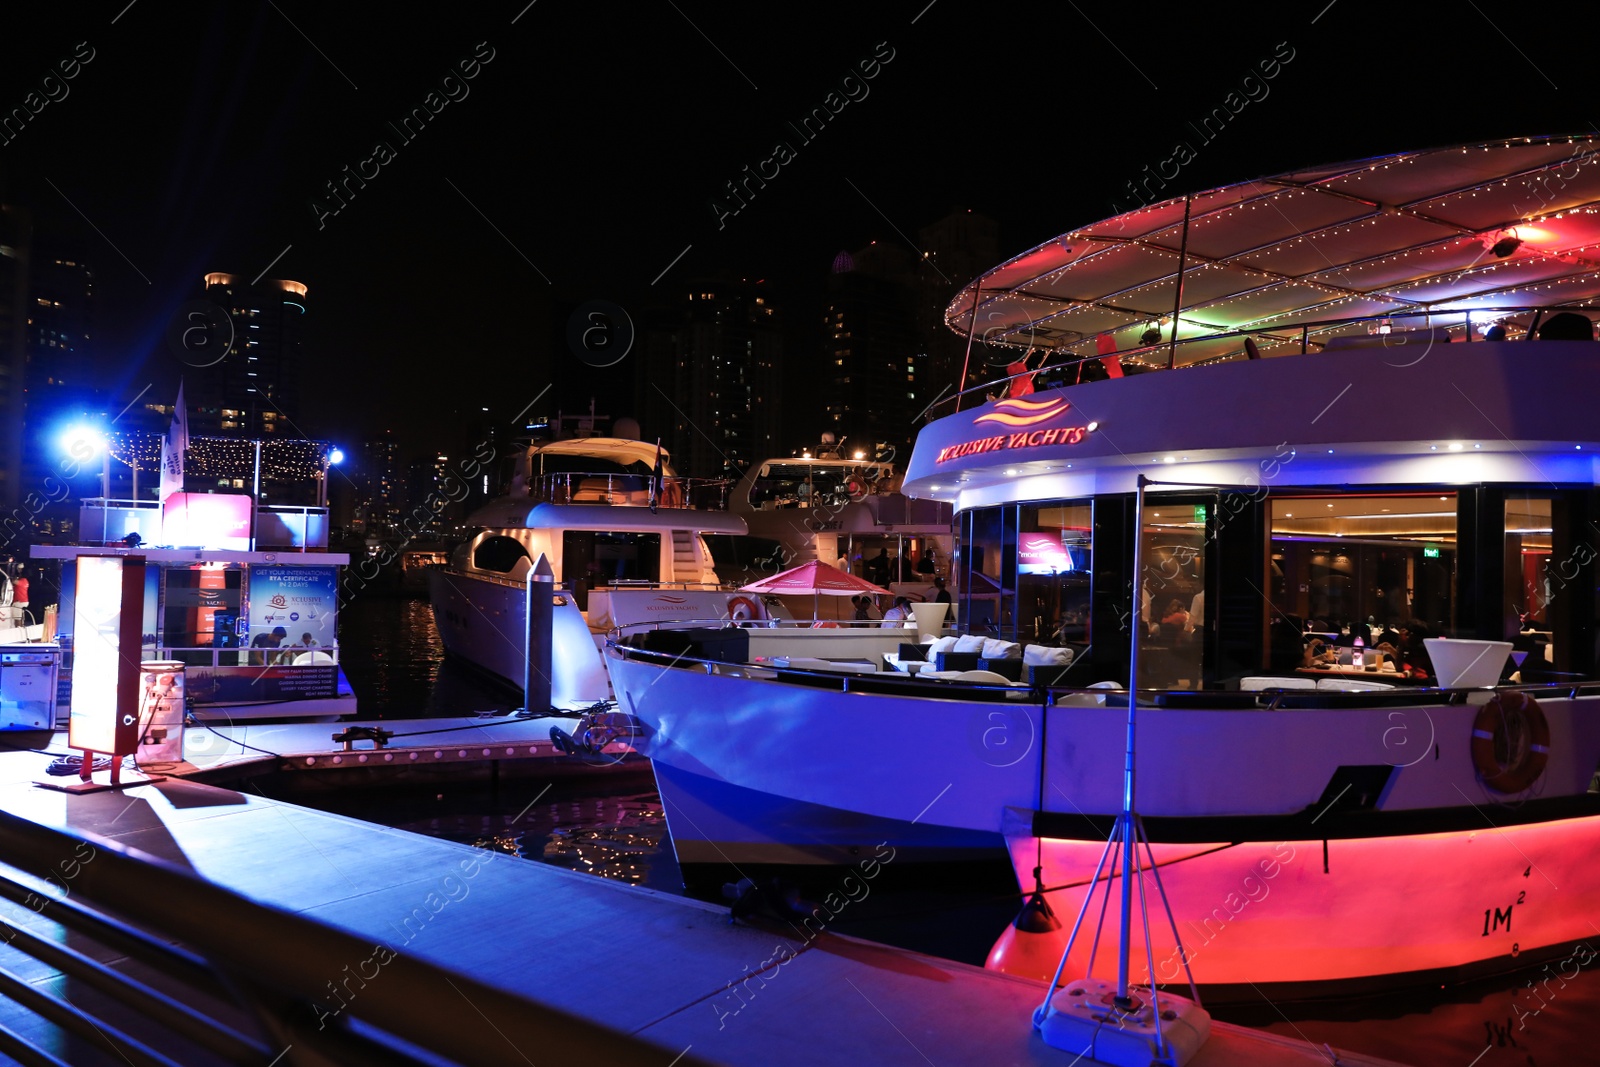 Photo of DUBAI, UNITED ARAB EMIRATES - NOVEMBER 03, 2018: Pier with luxury yachts at night